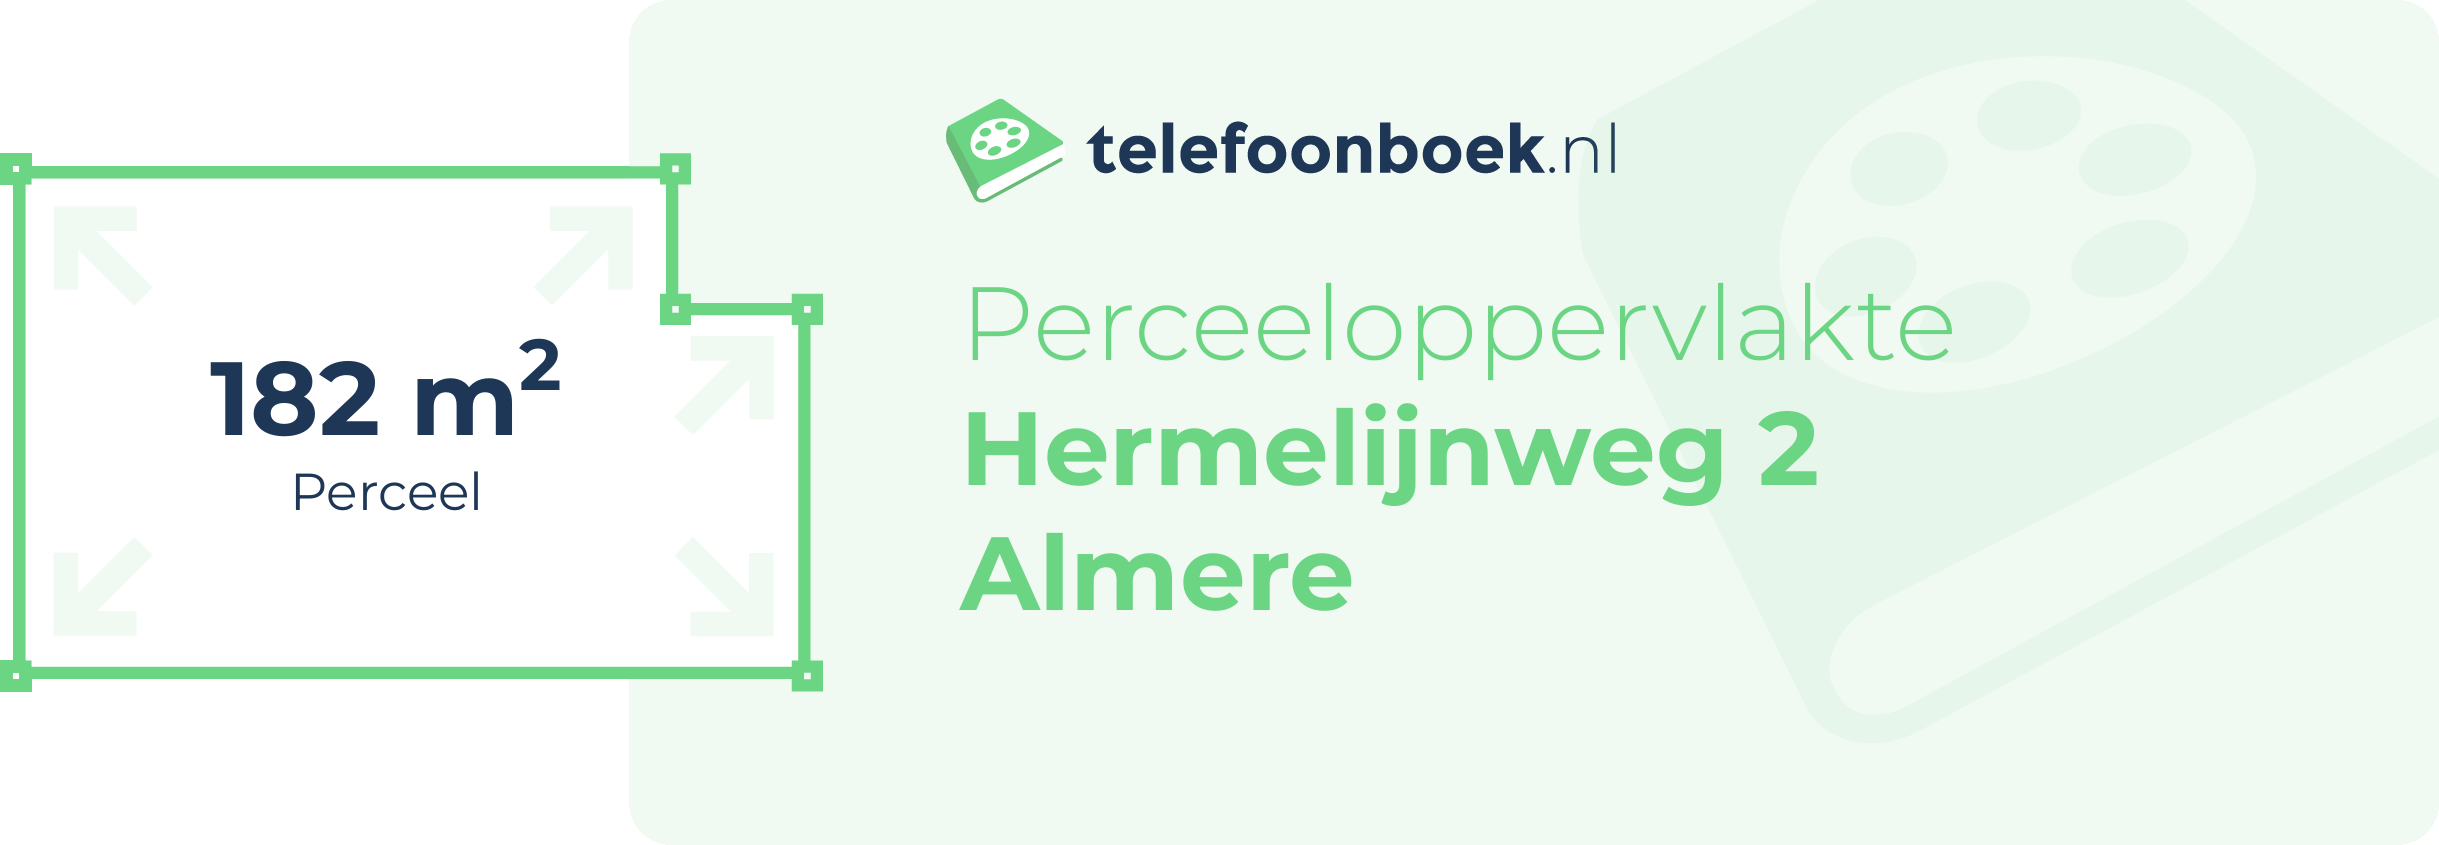 Perceeloppervlakte Hermelijnweg 2 Almere